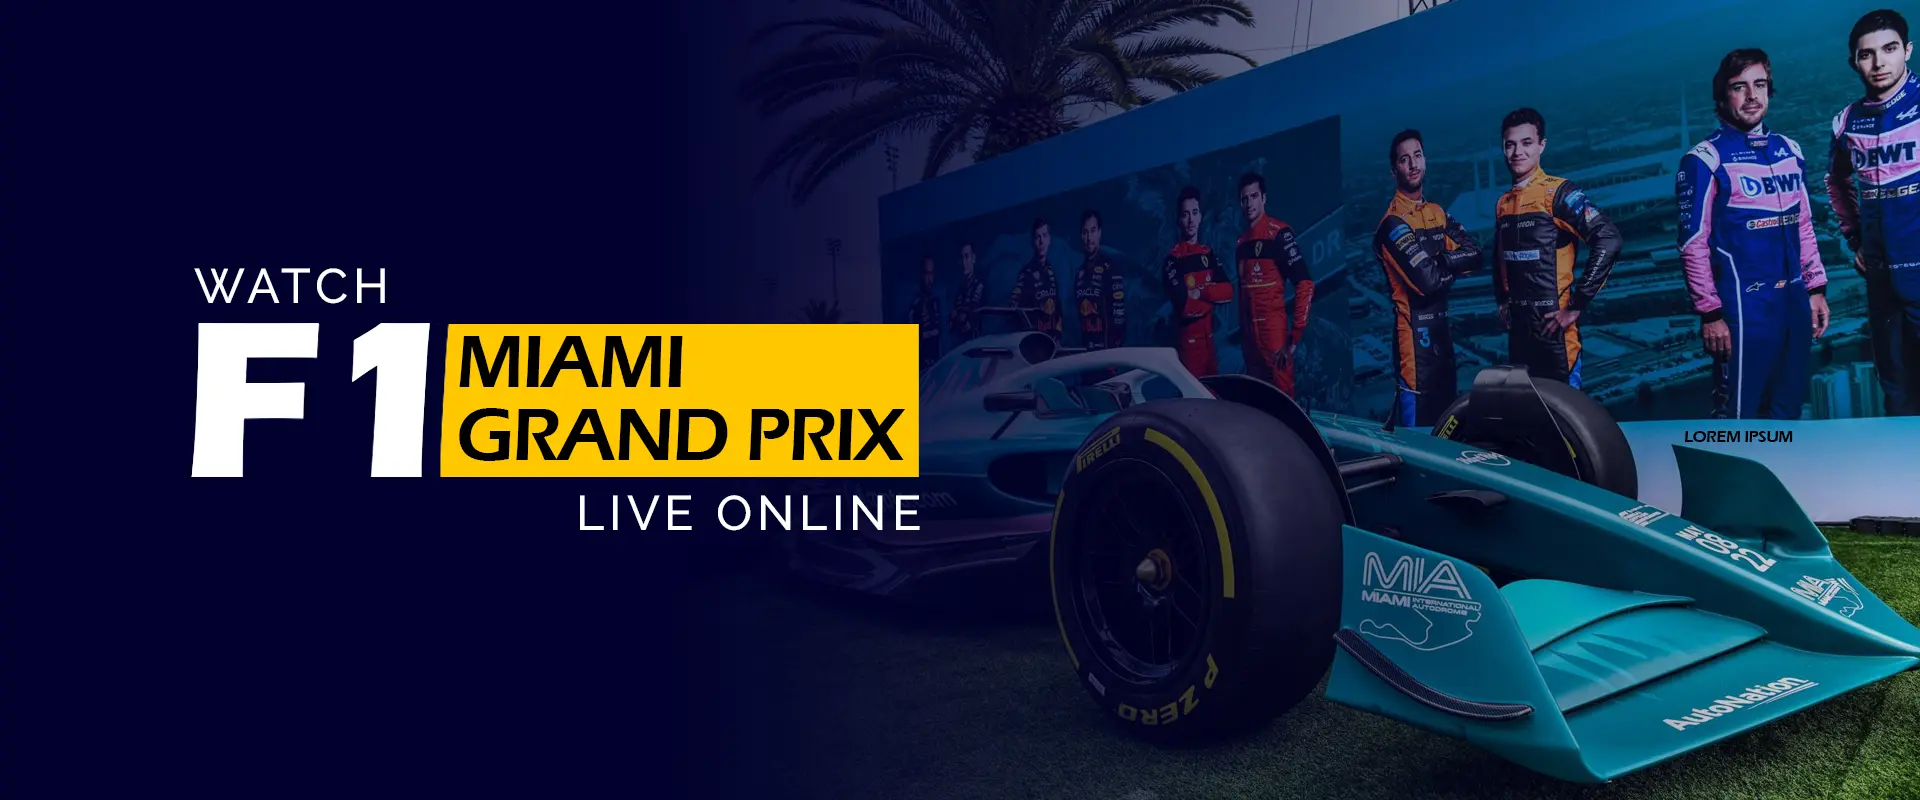 F1 マイアミ グランプリをオンラインでライブ観戦する